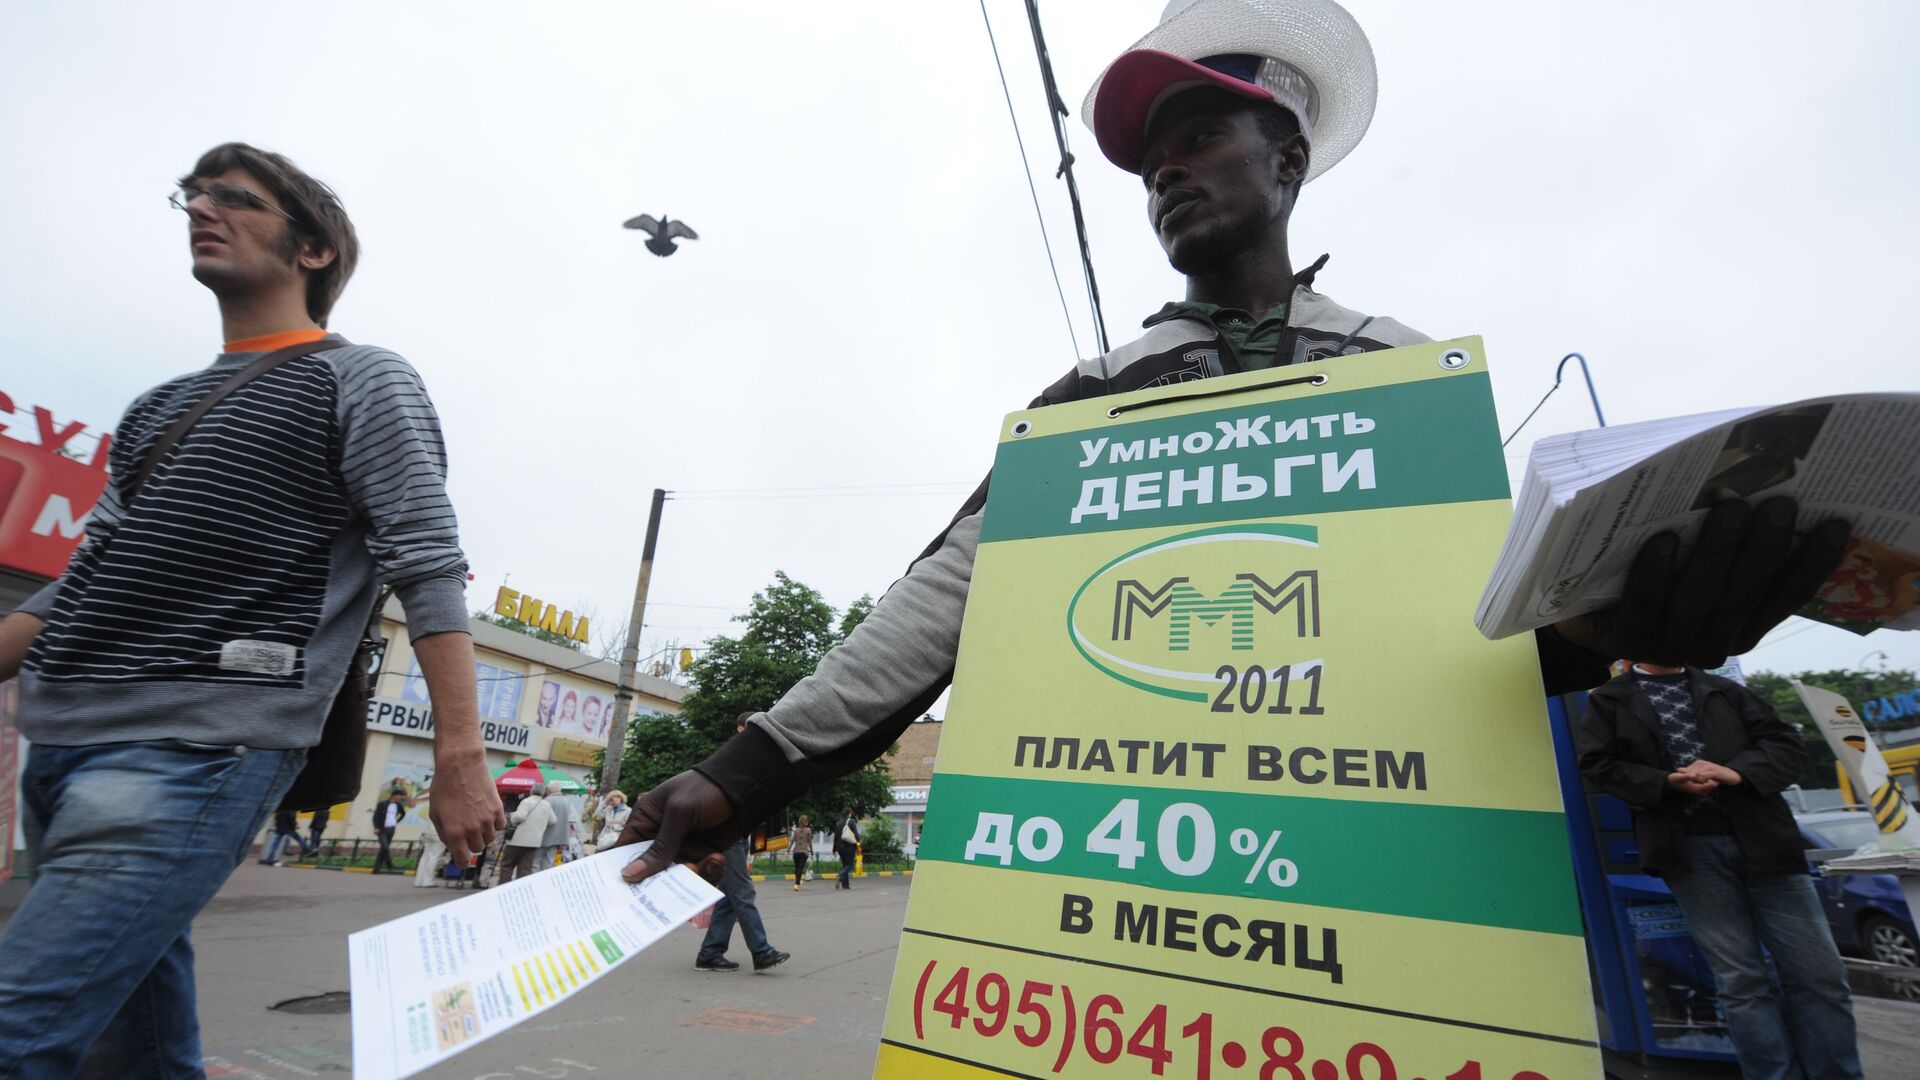 Реклама МММ 2011 на улицах Москвы - Sputnik Ўзбекистон, 1920, 29.10.2021